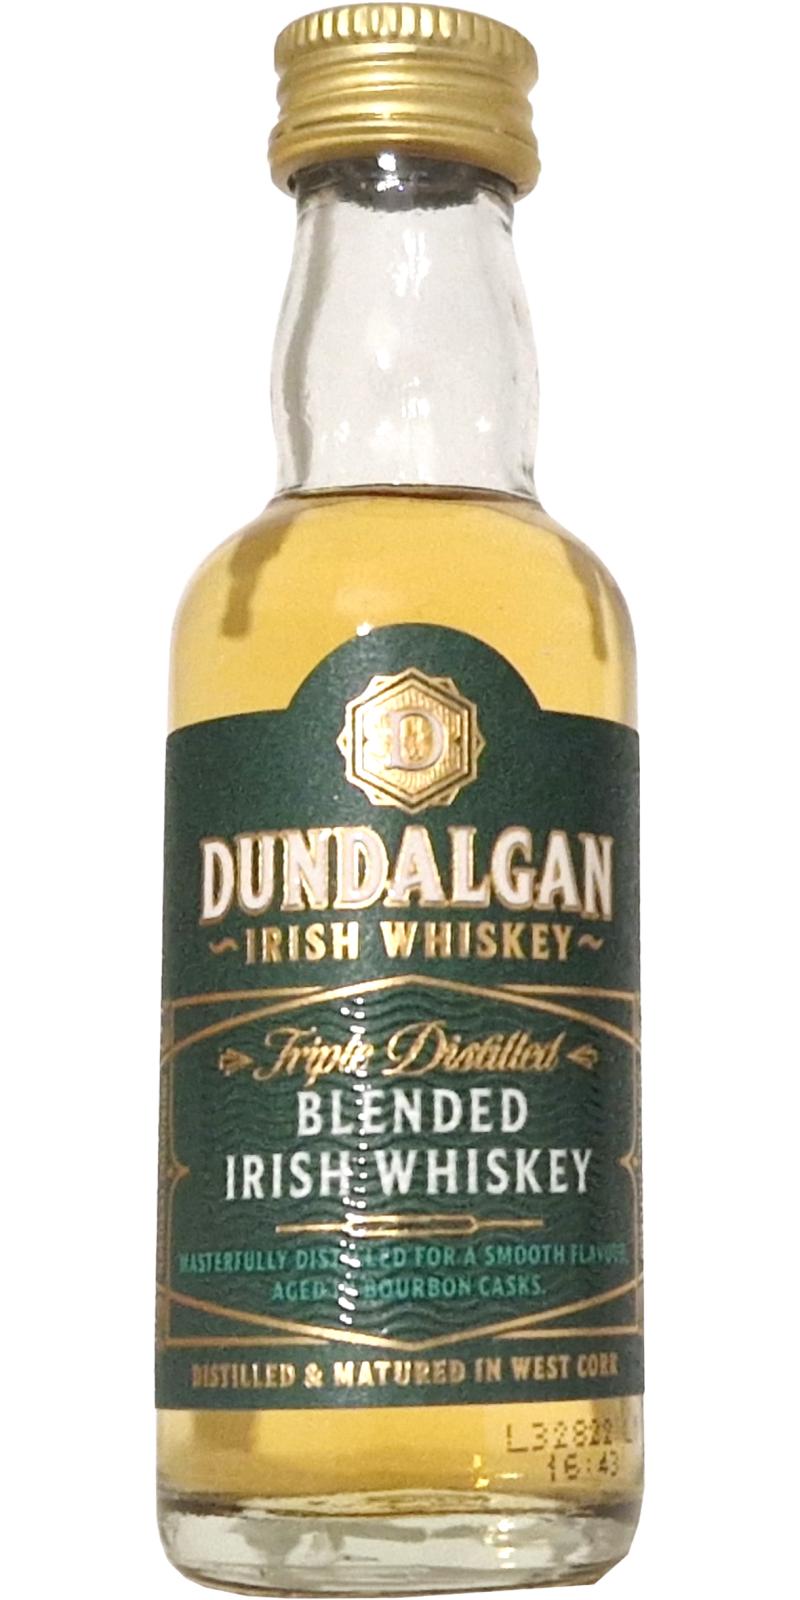 Dundalgan Blended Irish Whiskey reviews and Ratings - Whiskybase 